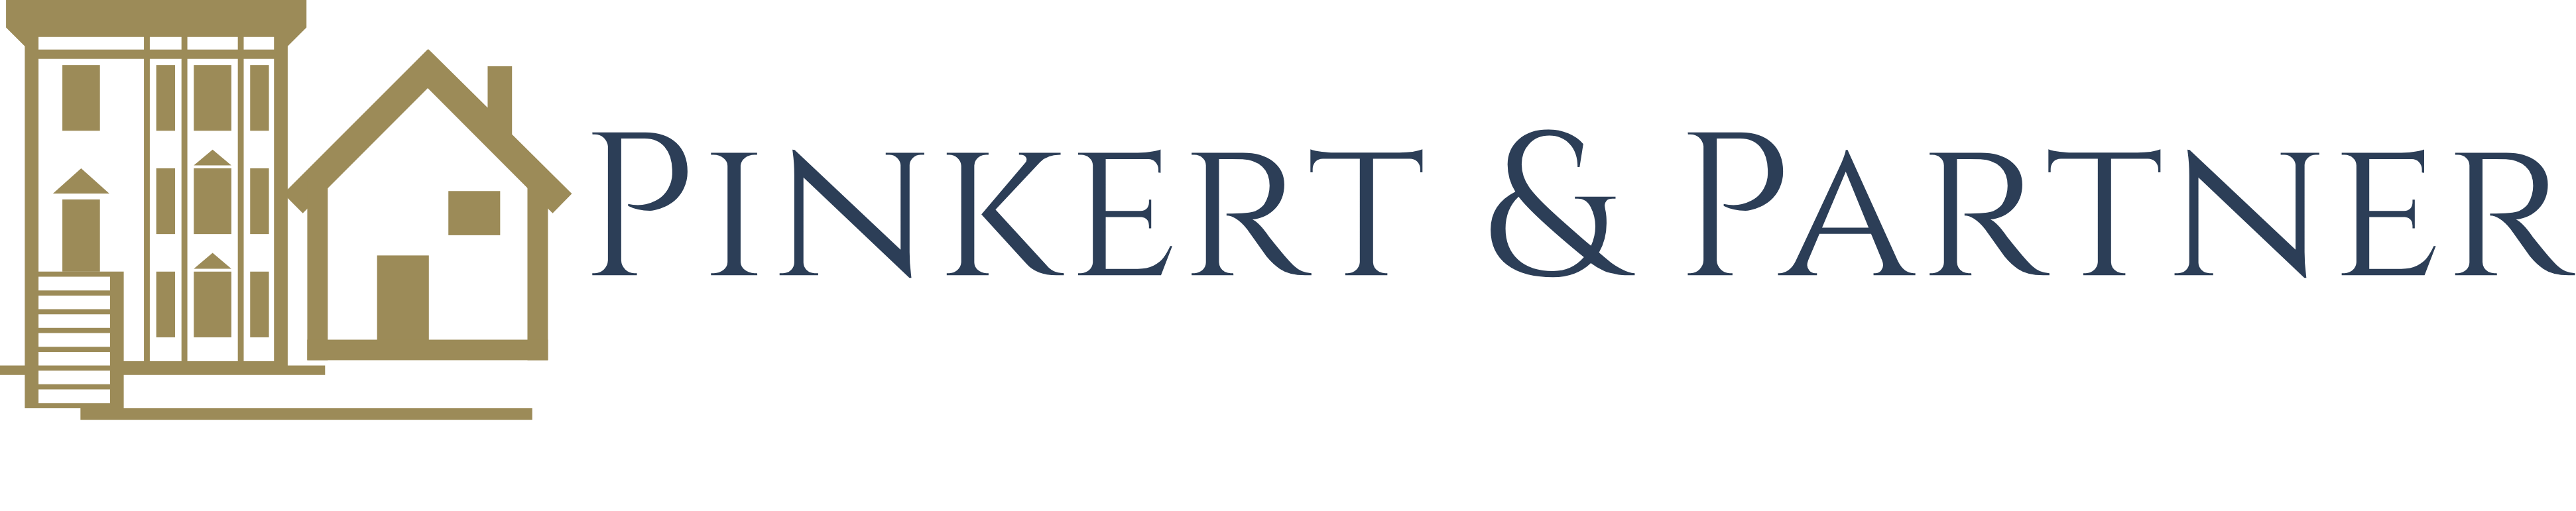 Pinkert & Partner Immobilien